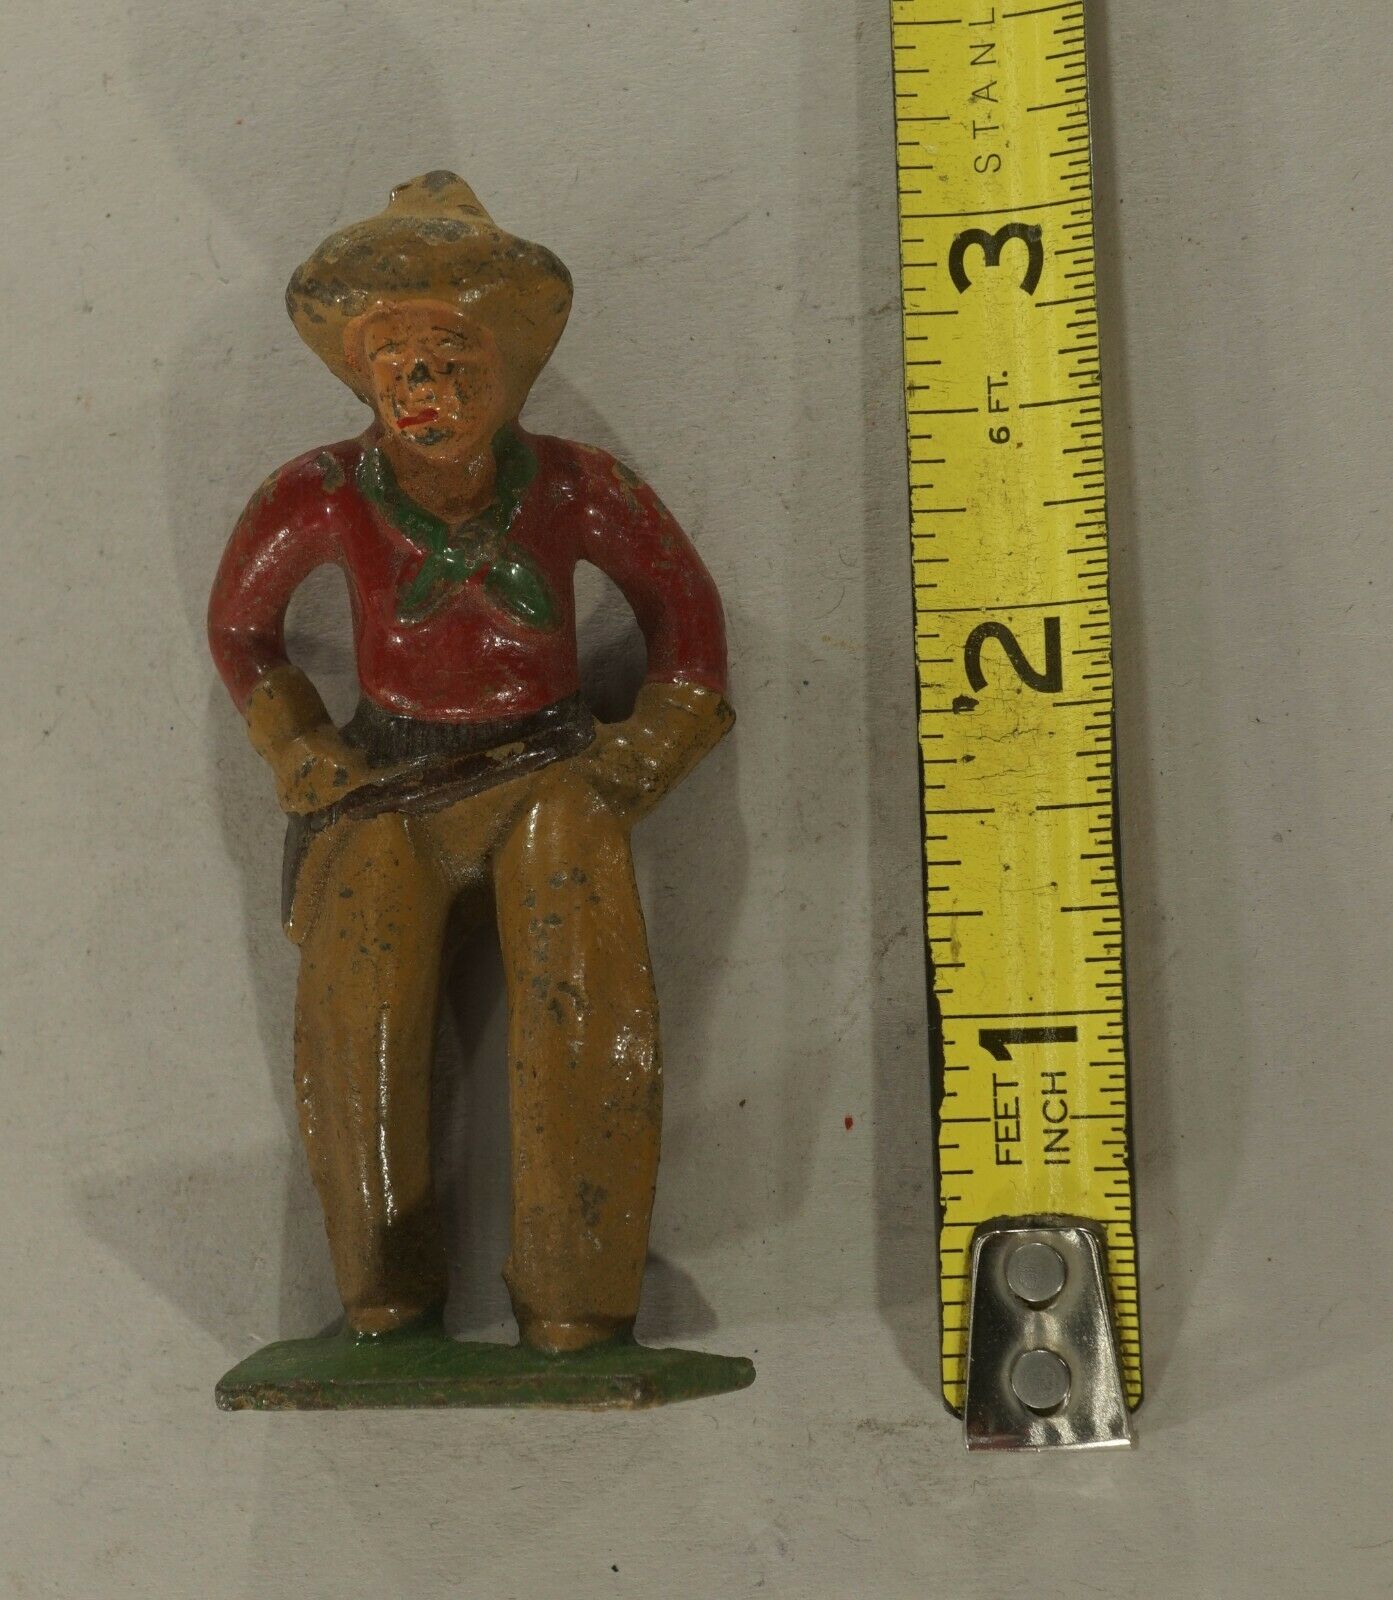 Original Vintage Antique Toy Cowboy Lead Figure (inventory No. 9142)